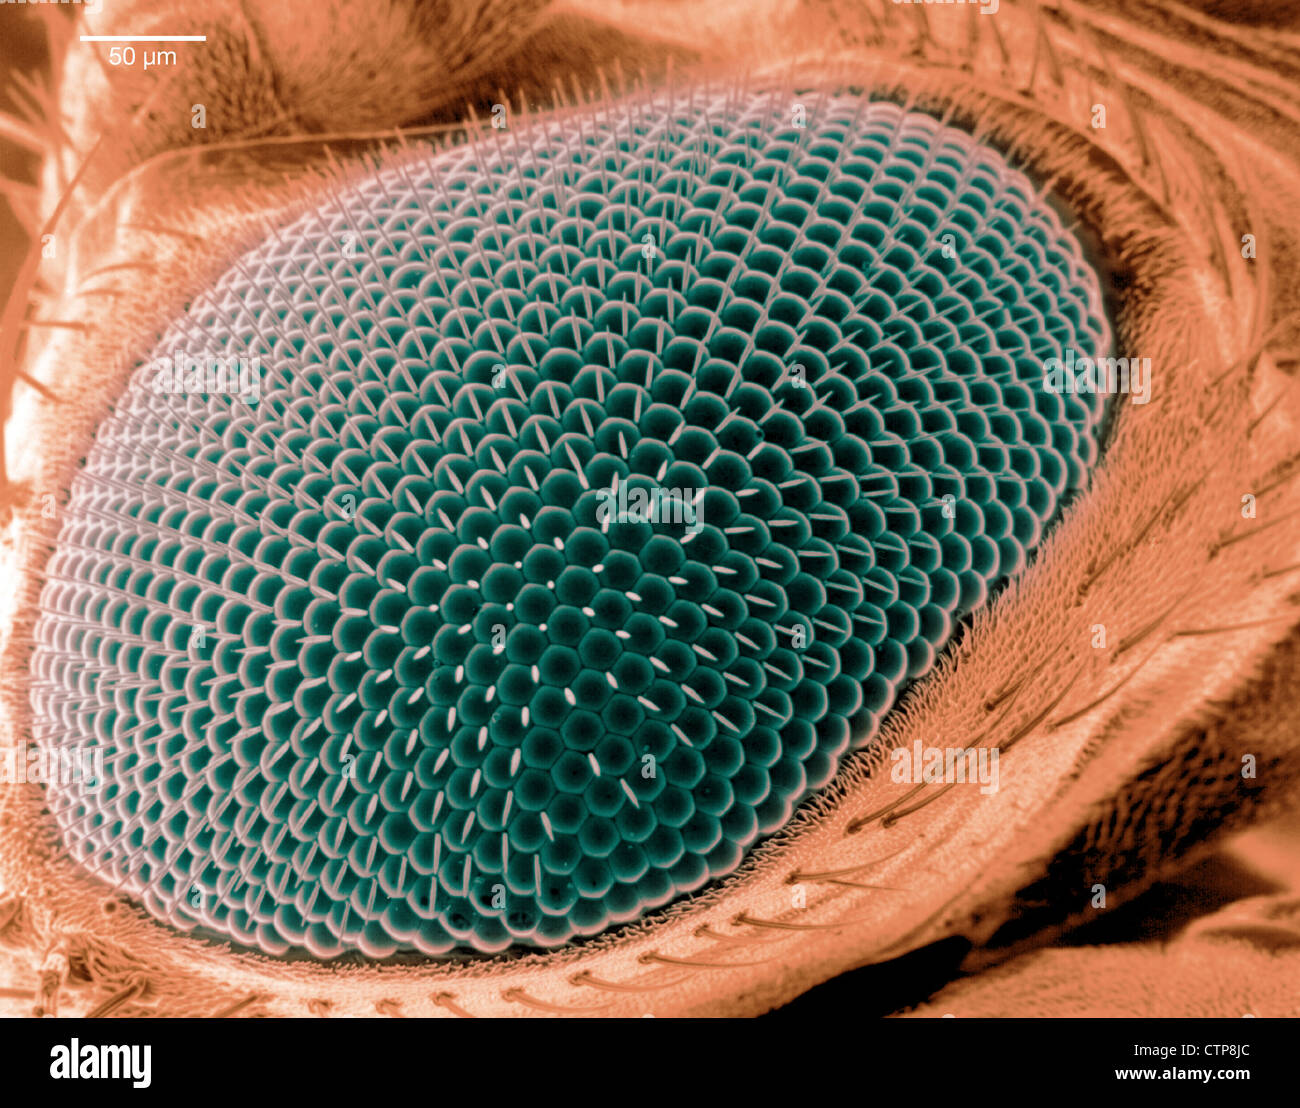 Rasterelektronenmikroskop Bild eines Auges auf eine Fruchtfliege. Stockfoto